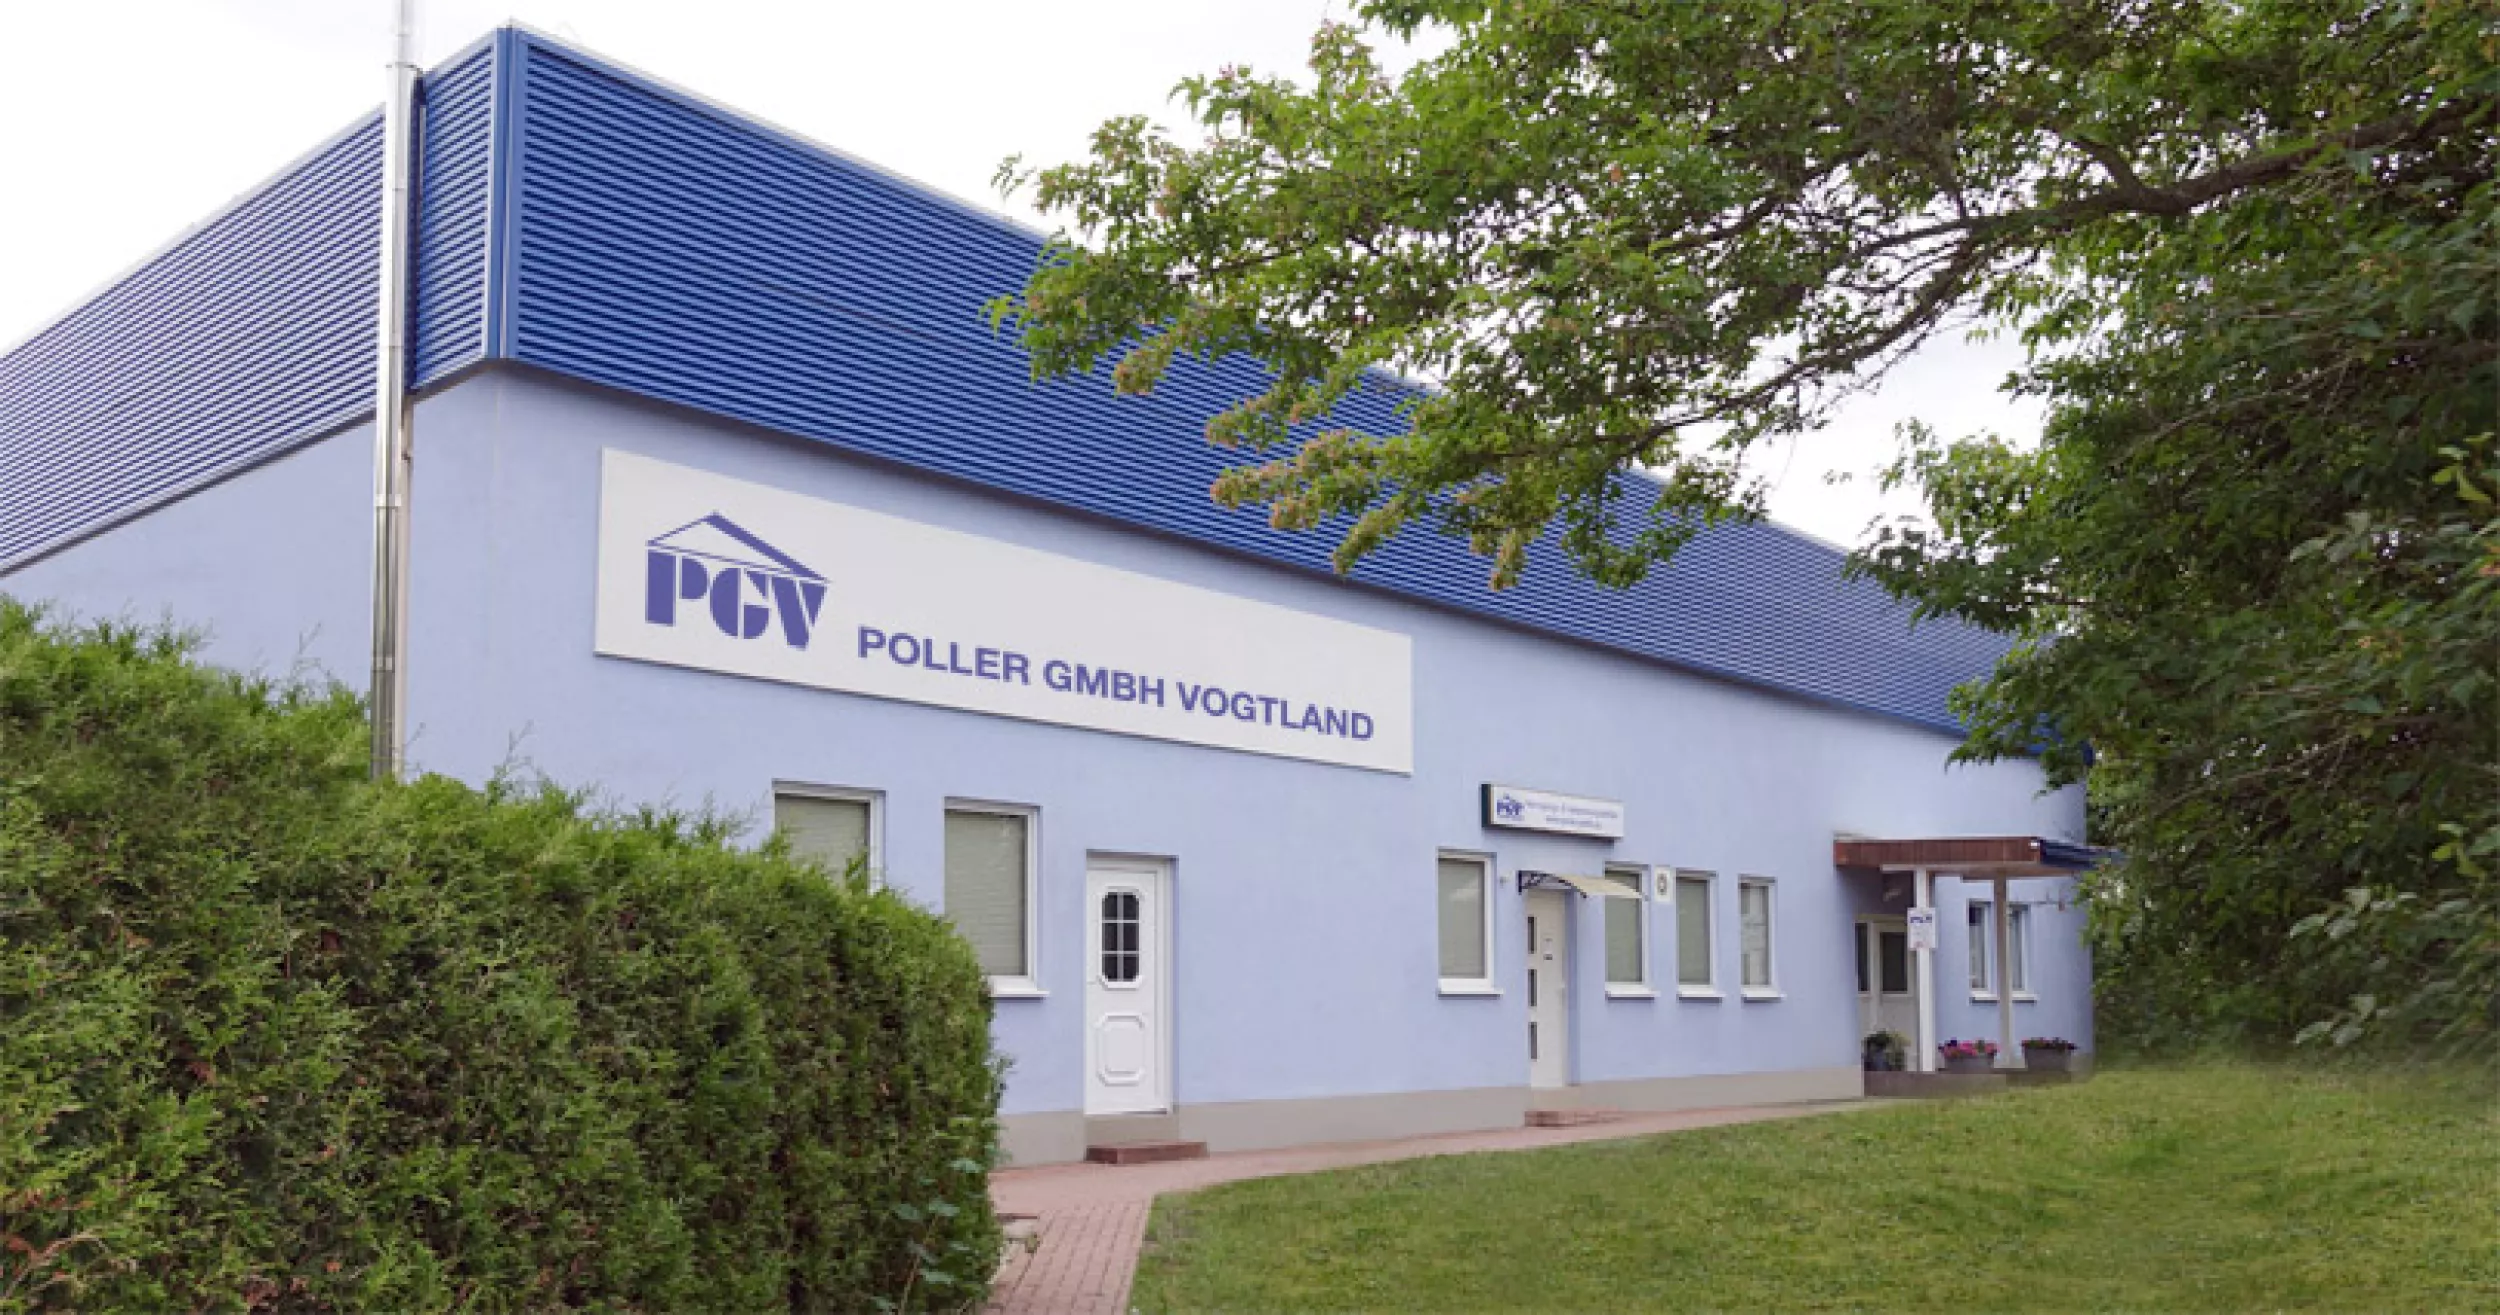 Poller GmbH Vogtland (PGV)